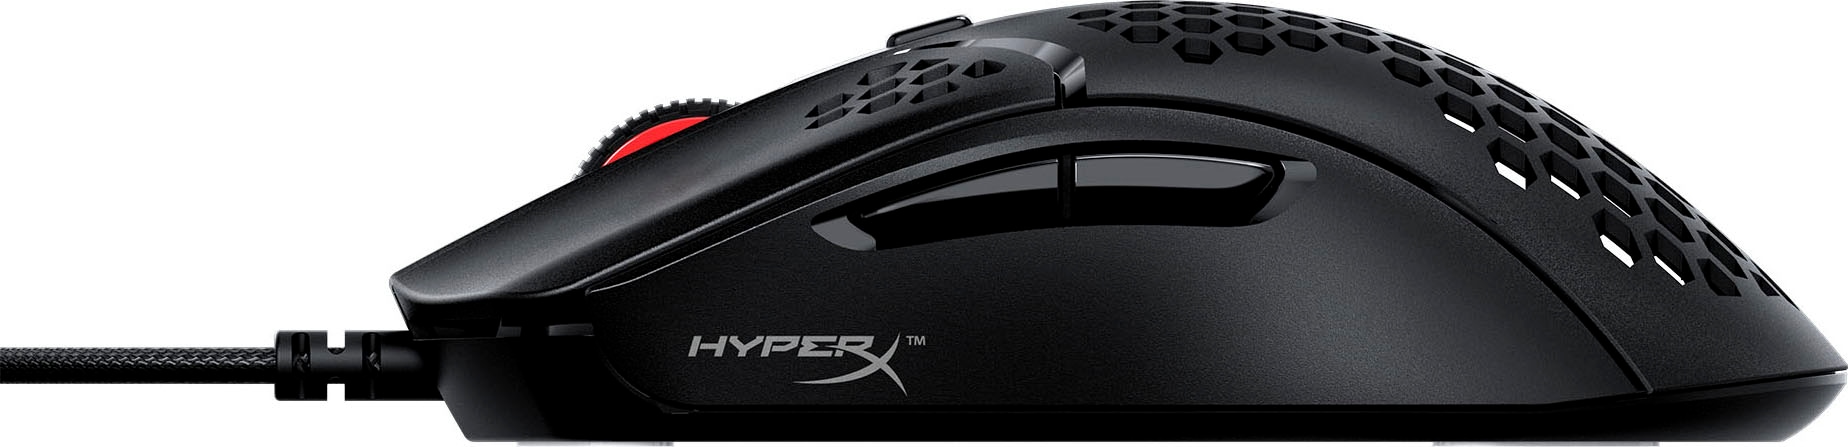 HyperX Gaming-Maus »Pulsefire Haste«, kabelgebunden